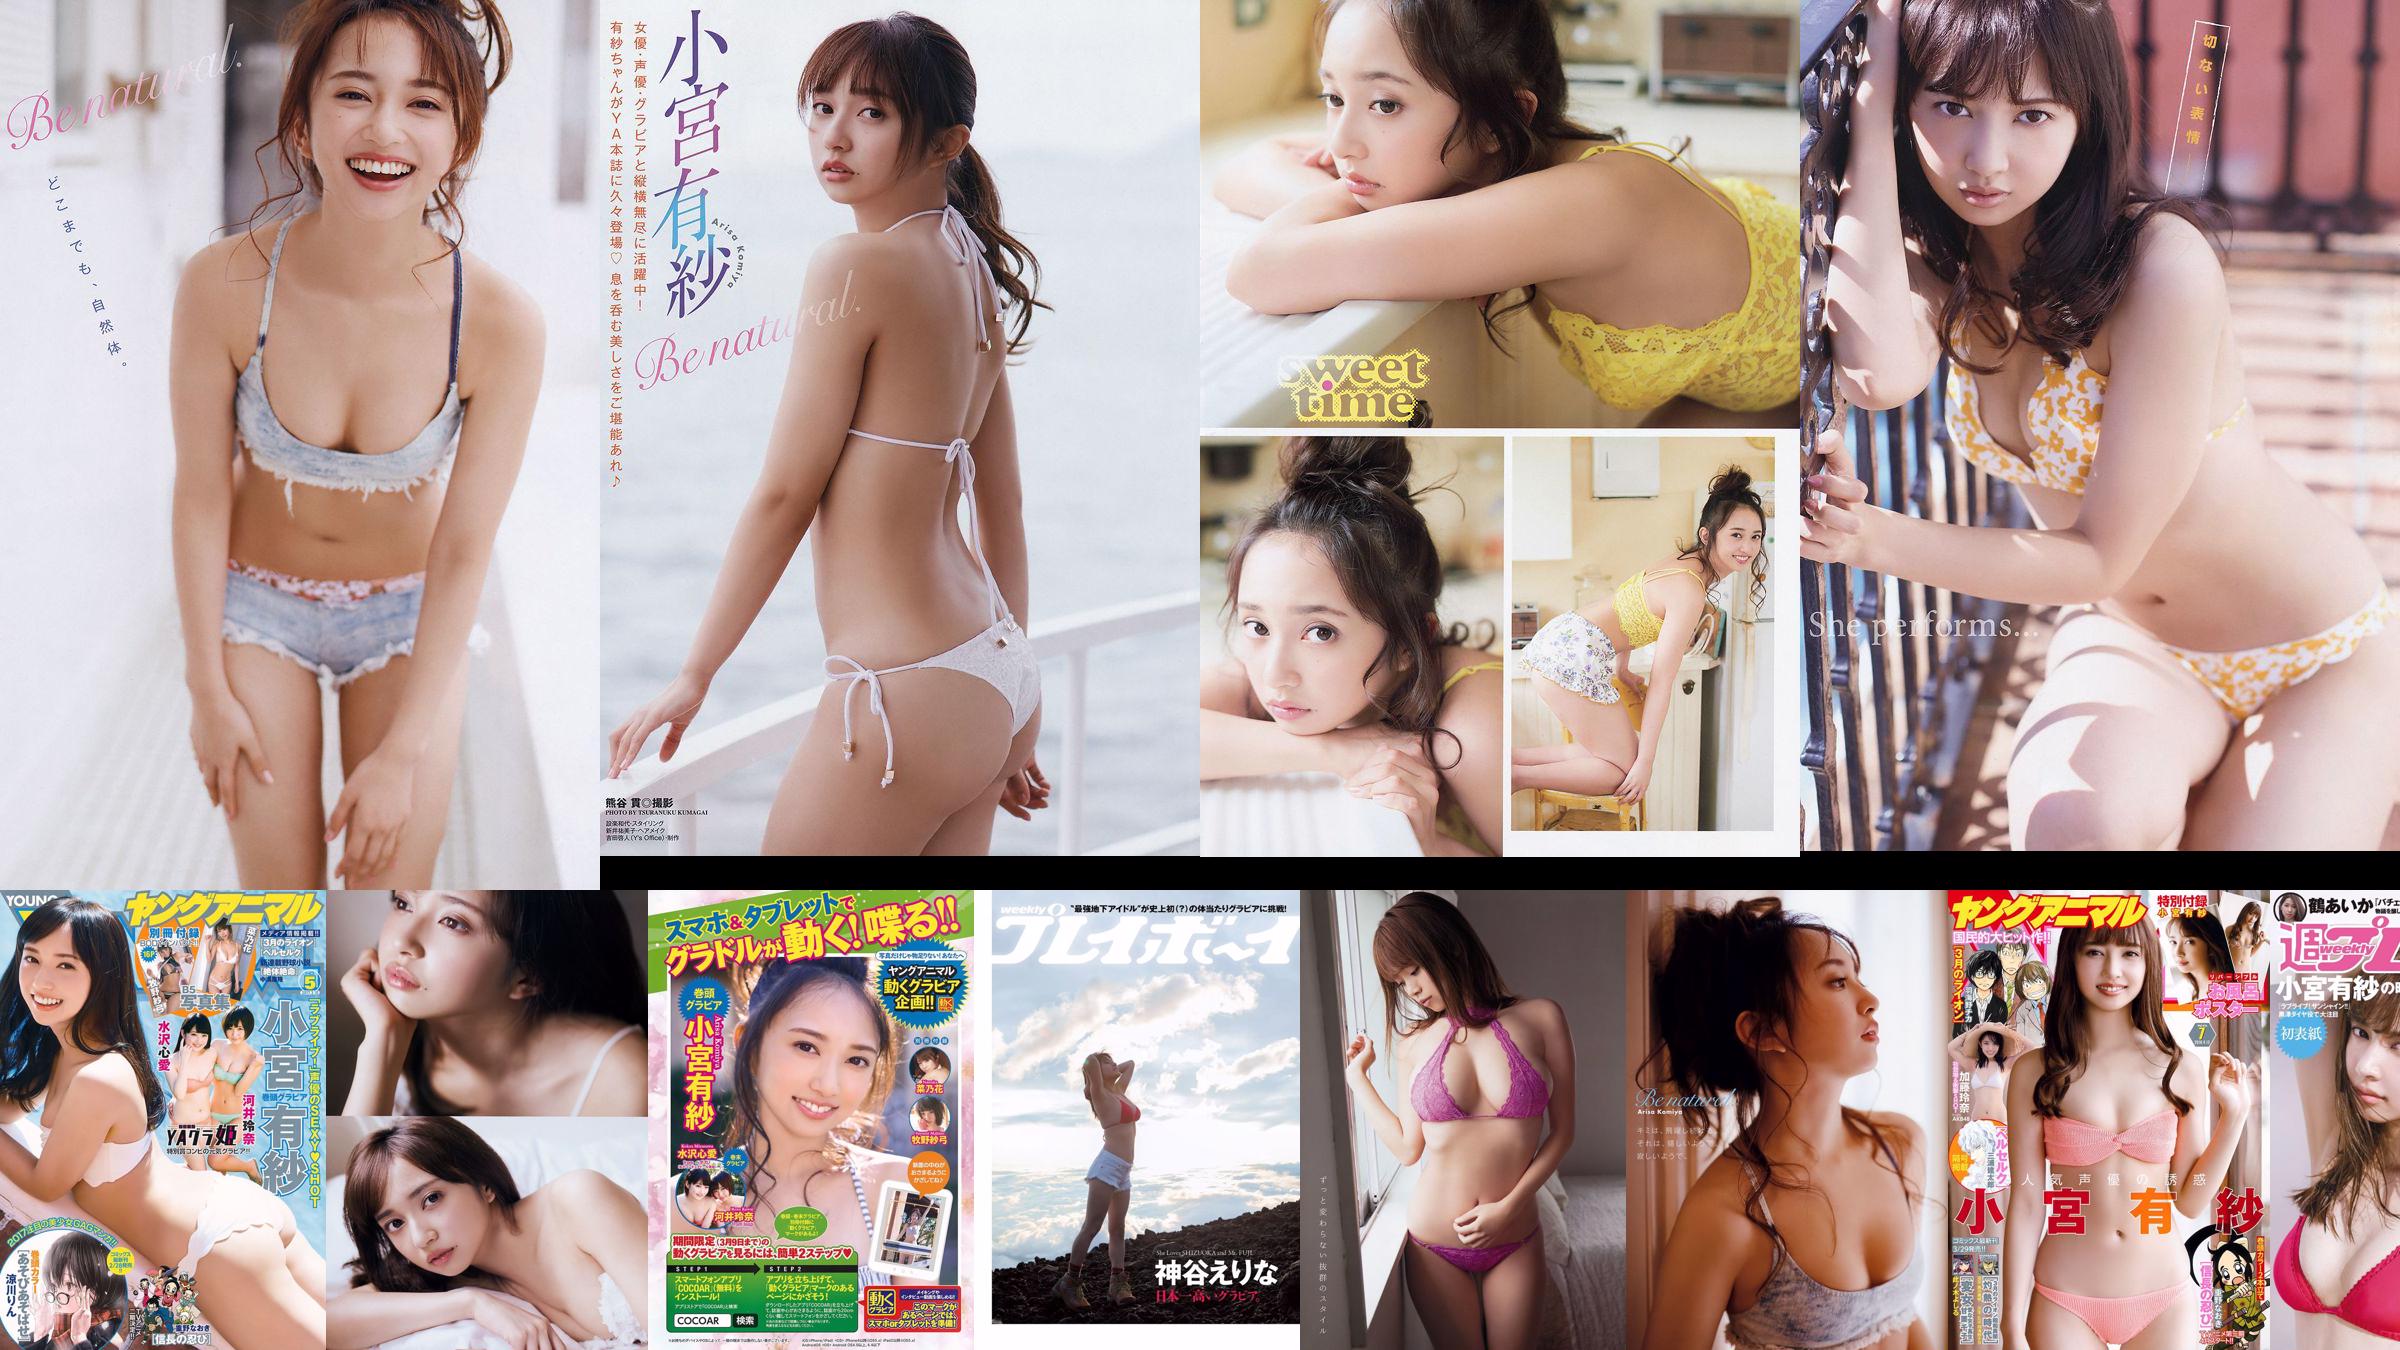 Arisa Komiya Aika Tsuru Sayaka Isoyama Kasumi Arimura Rina Otomo Sei Shiraishi Erina Kamiya [Weekly Playboy] 2017 No.41 Fotografía No.43b1d8 Página 2